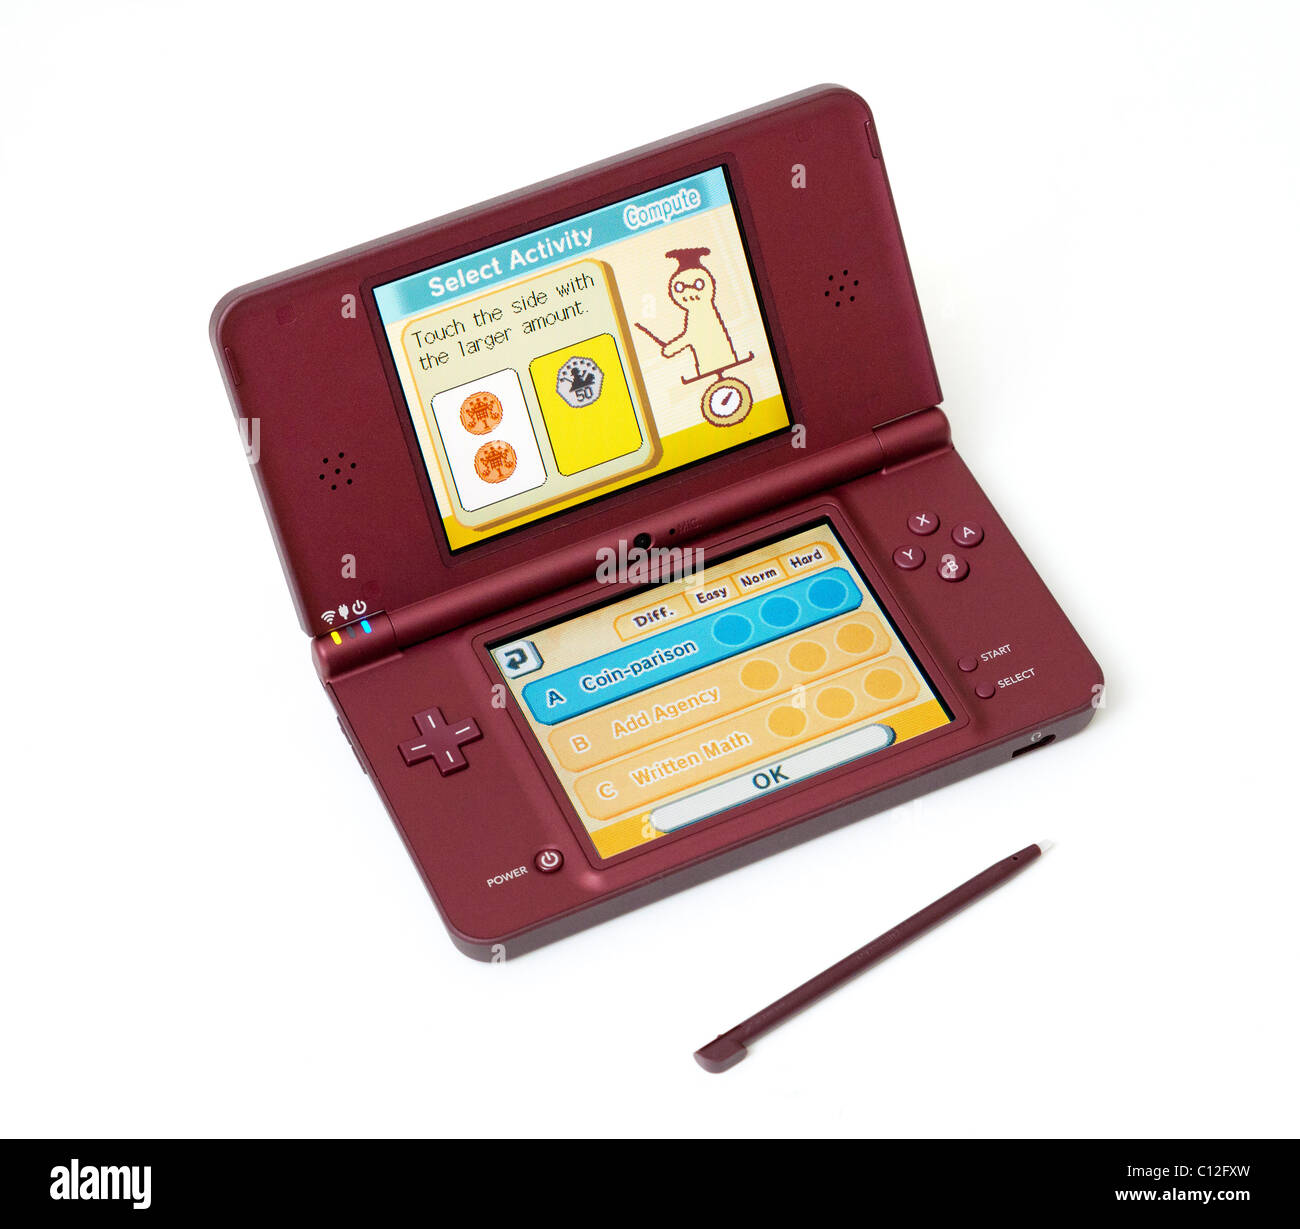 Nintendo DSi XL games console Stock Photo